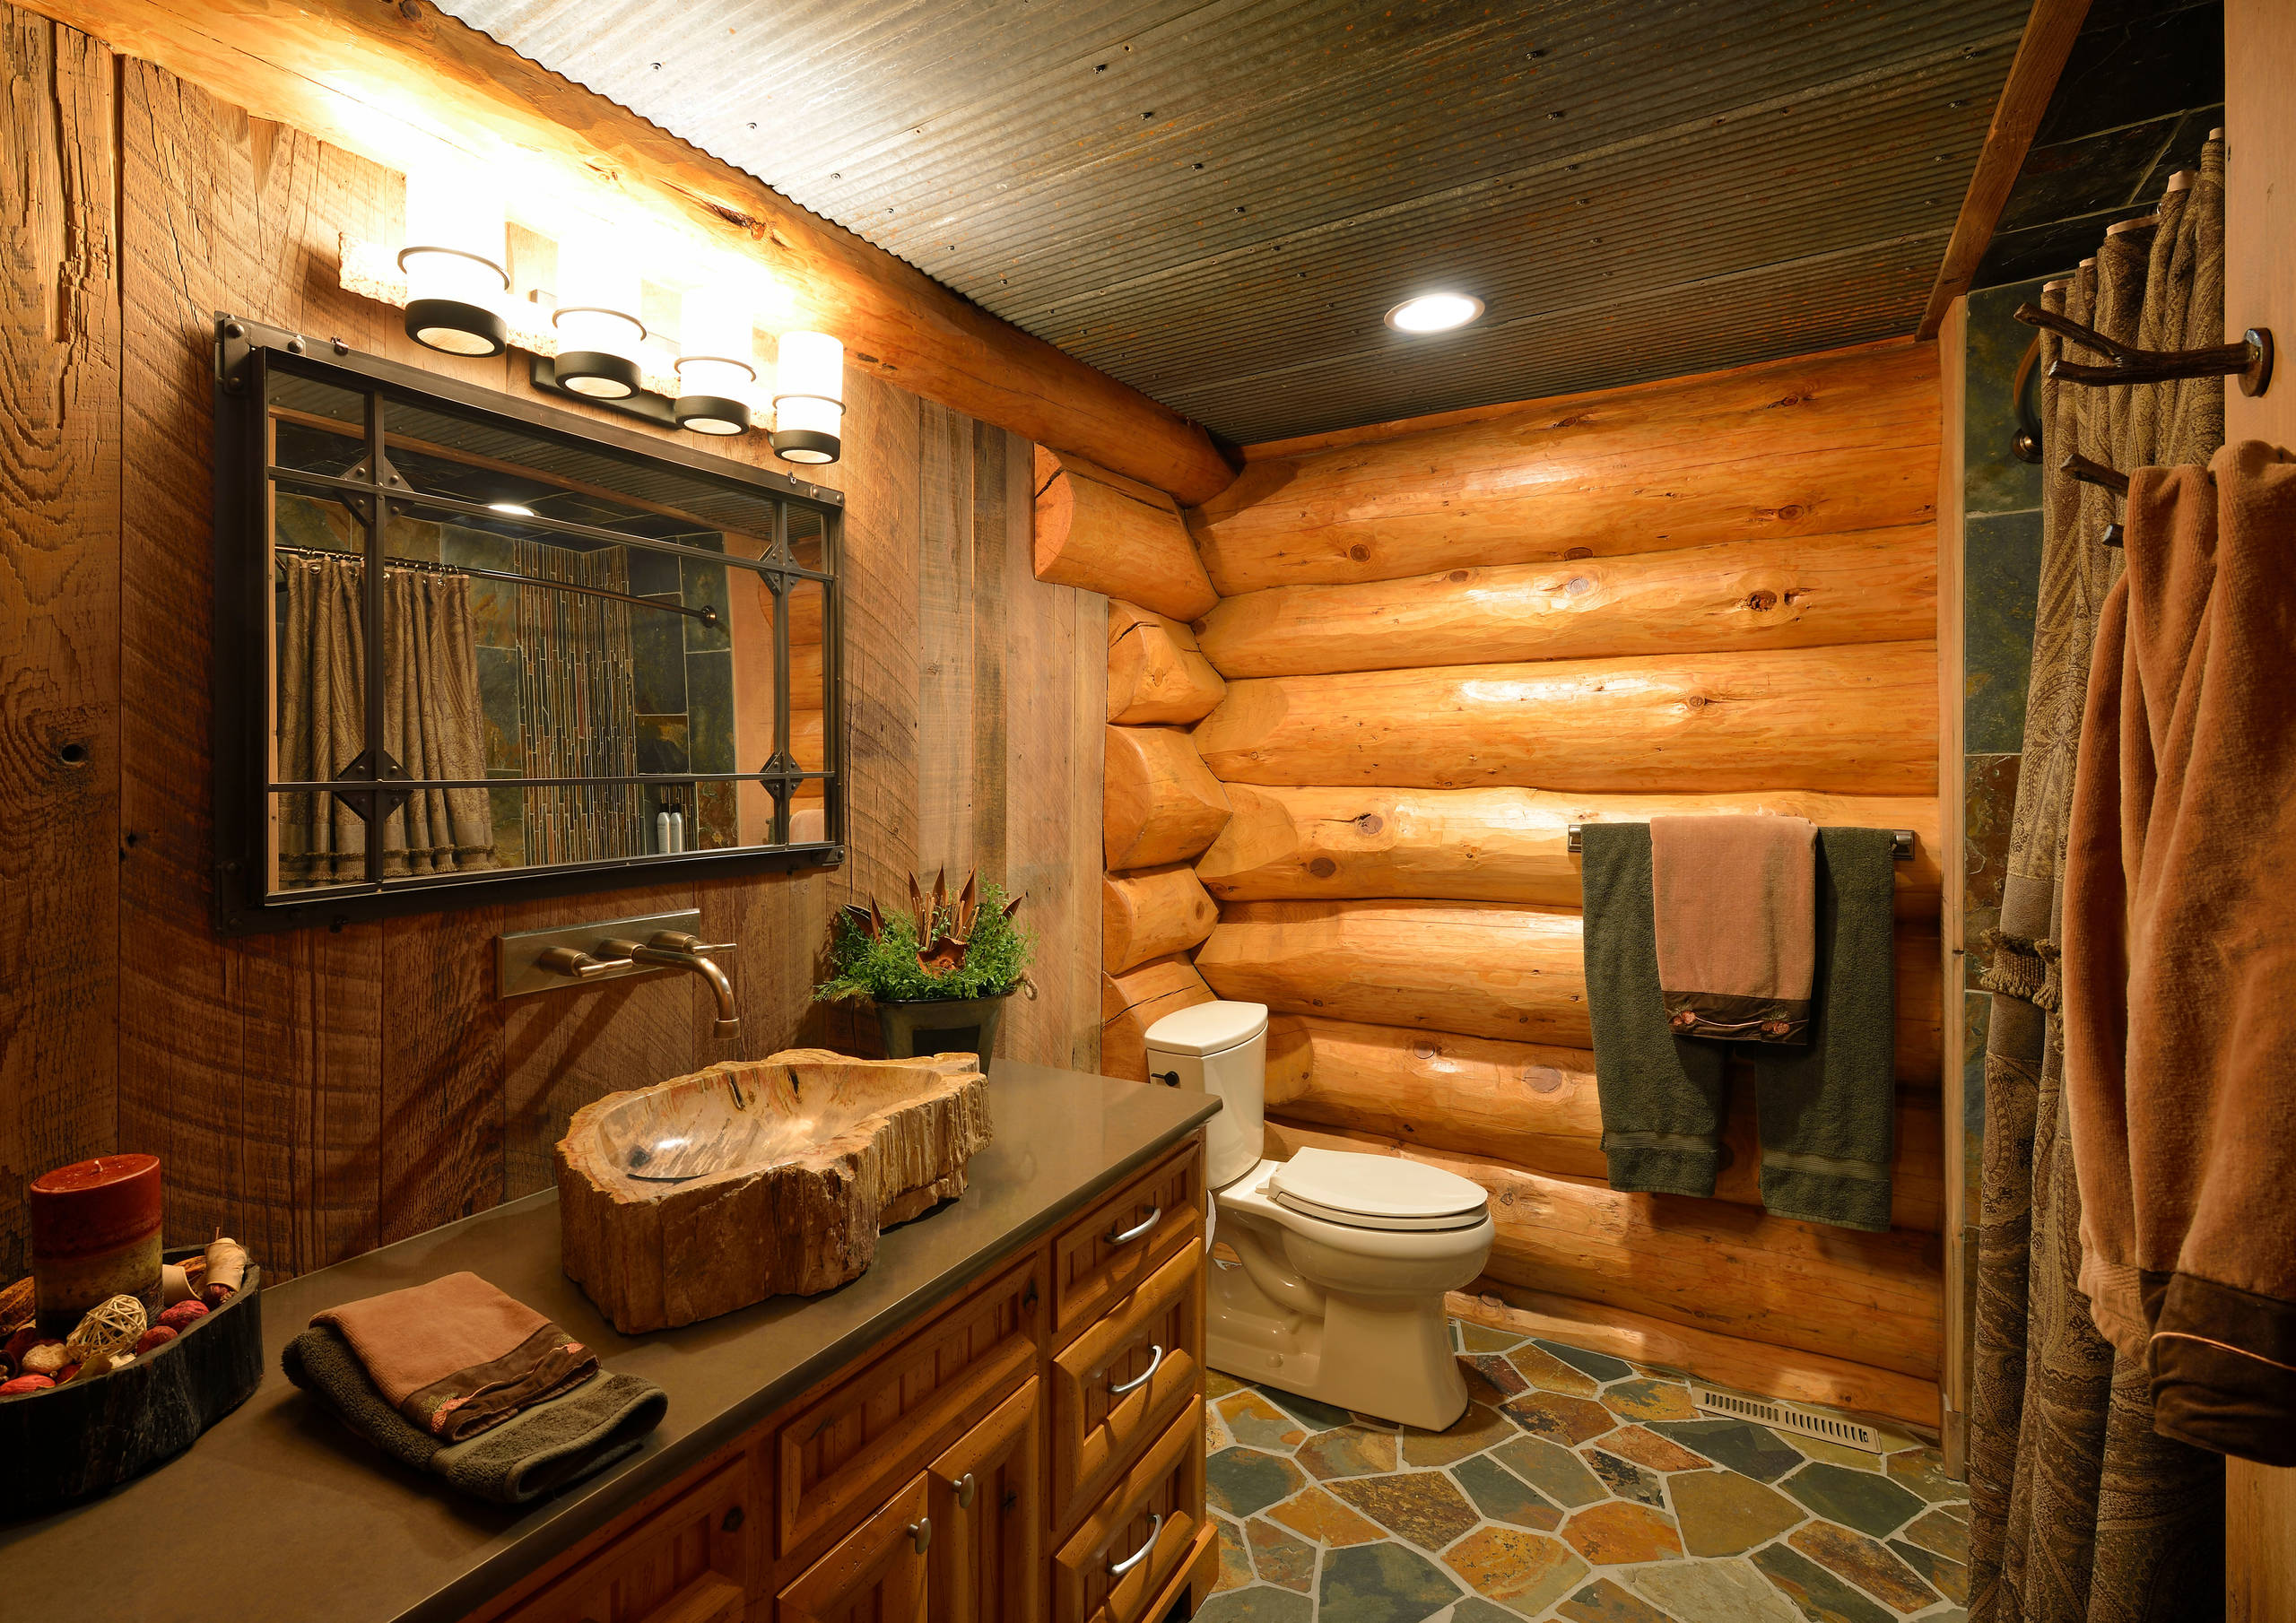 Отделка деревянной комнаты. Ванная в деревянном доме. Отделка ванной комнаты в деревянном доме. Интерьер ванны в деревянном доме. Ванная в деревенском стиле.